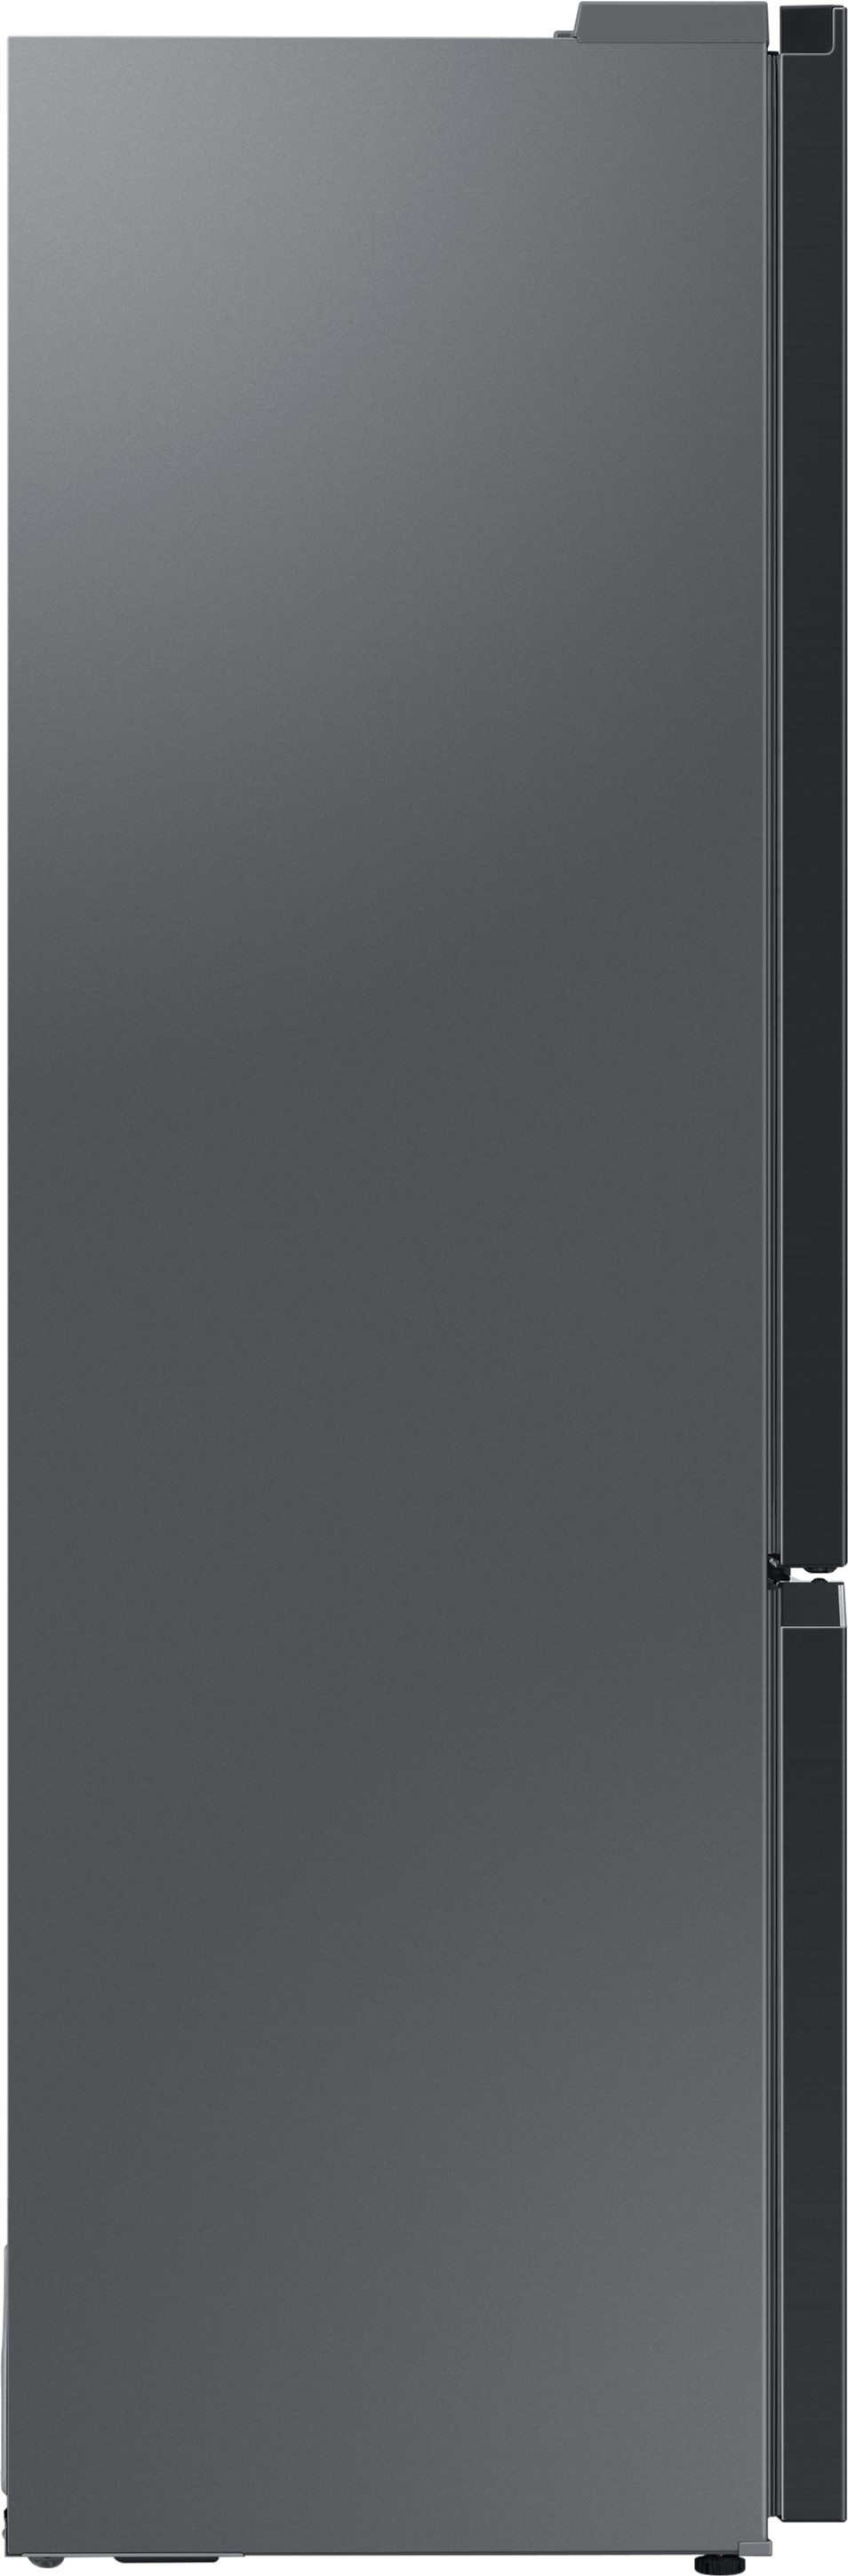 Холодильник Samsung RB38C679EB1/UA отзывы - изображения 5